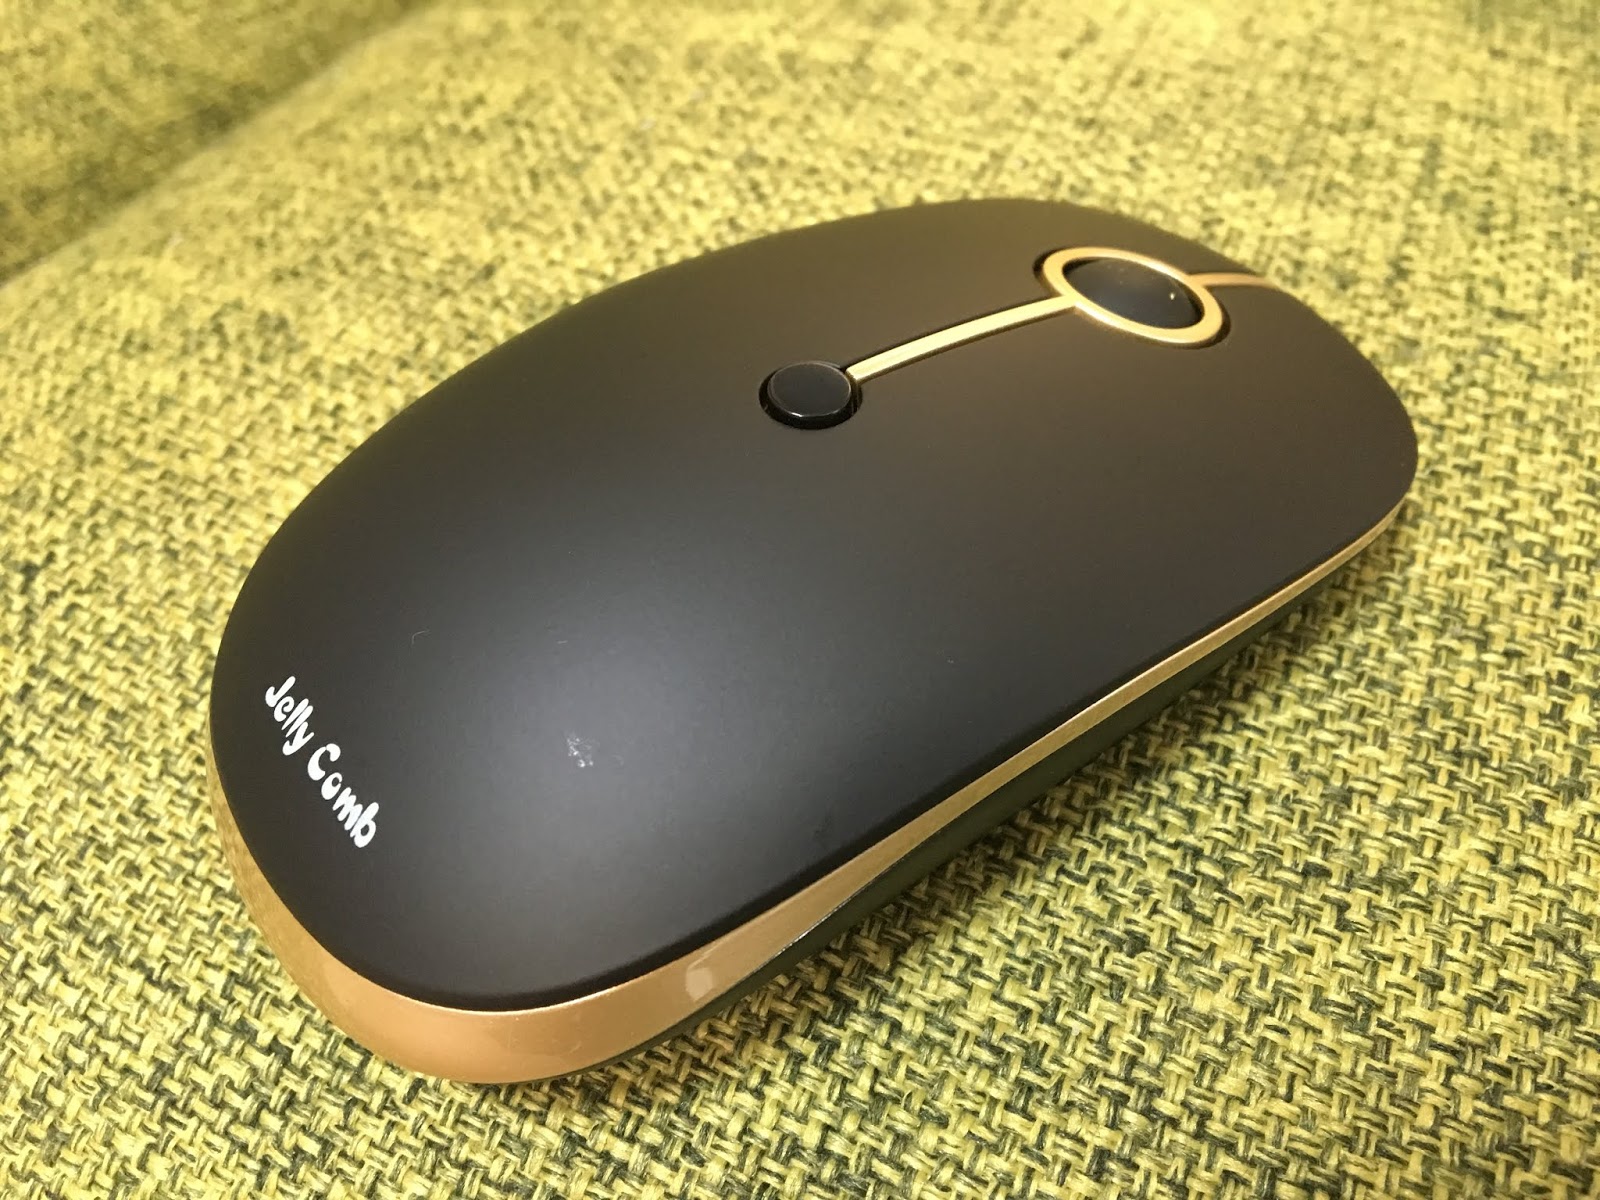 Jellycombのマウスがお洒落すぎてマウスの原宿と感じた Bluetooth接続方法も記載 たろたろブログ